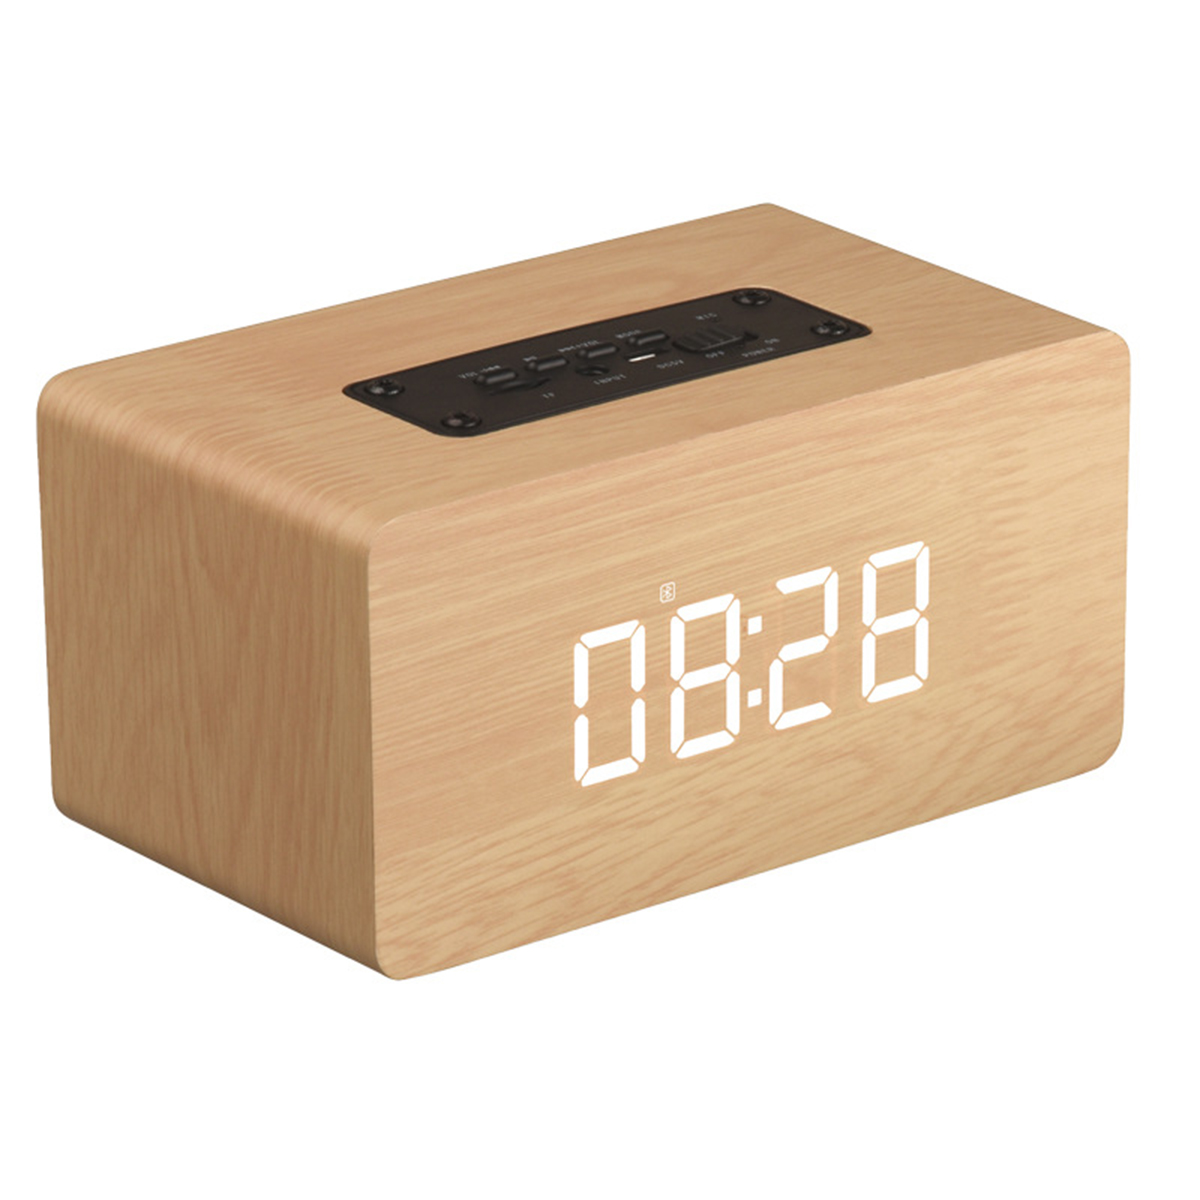 BRIGHTAKE Bluetooth Lautsprecher Wecker - Alarm Uhrfunktion Gelb - Holzdesign Bluetooth-Lautsprecher, 